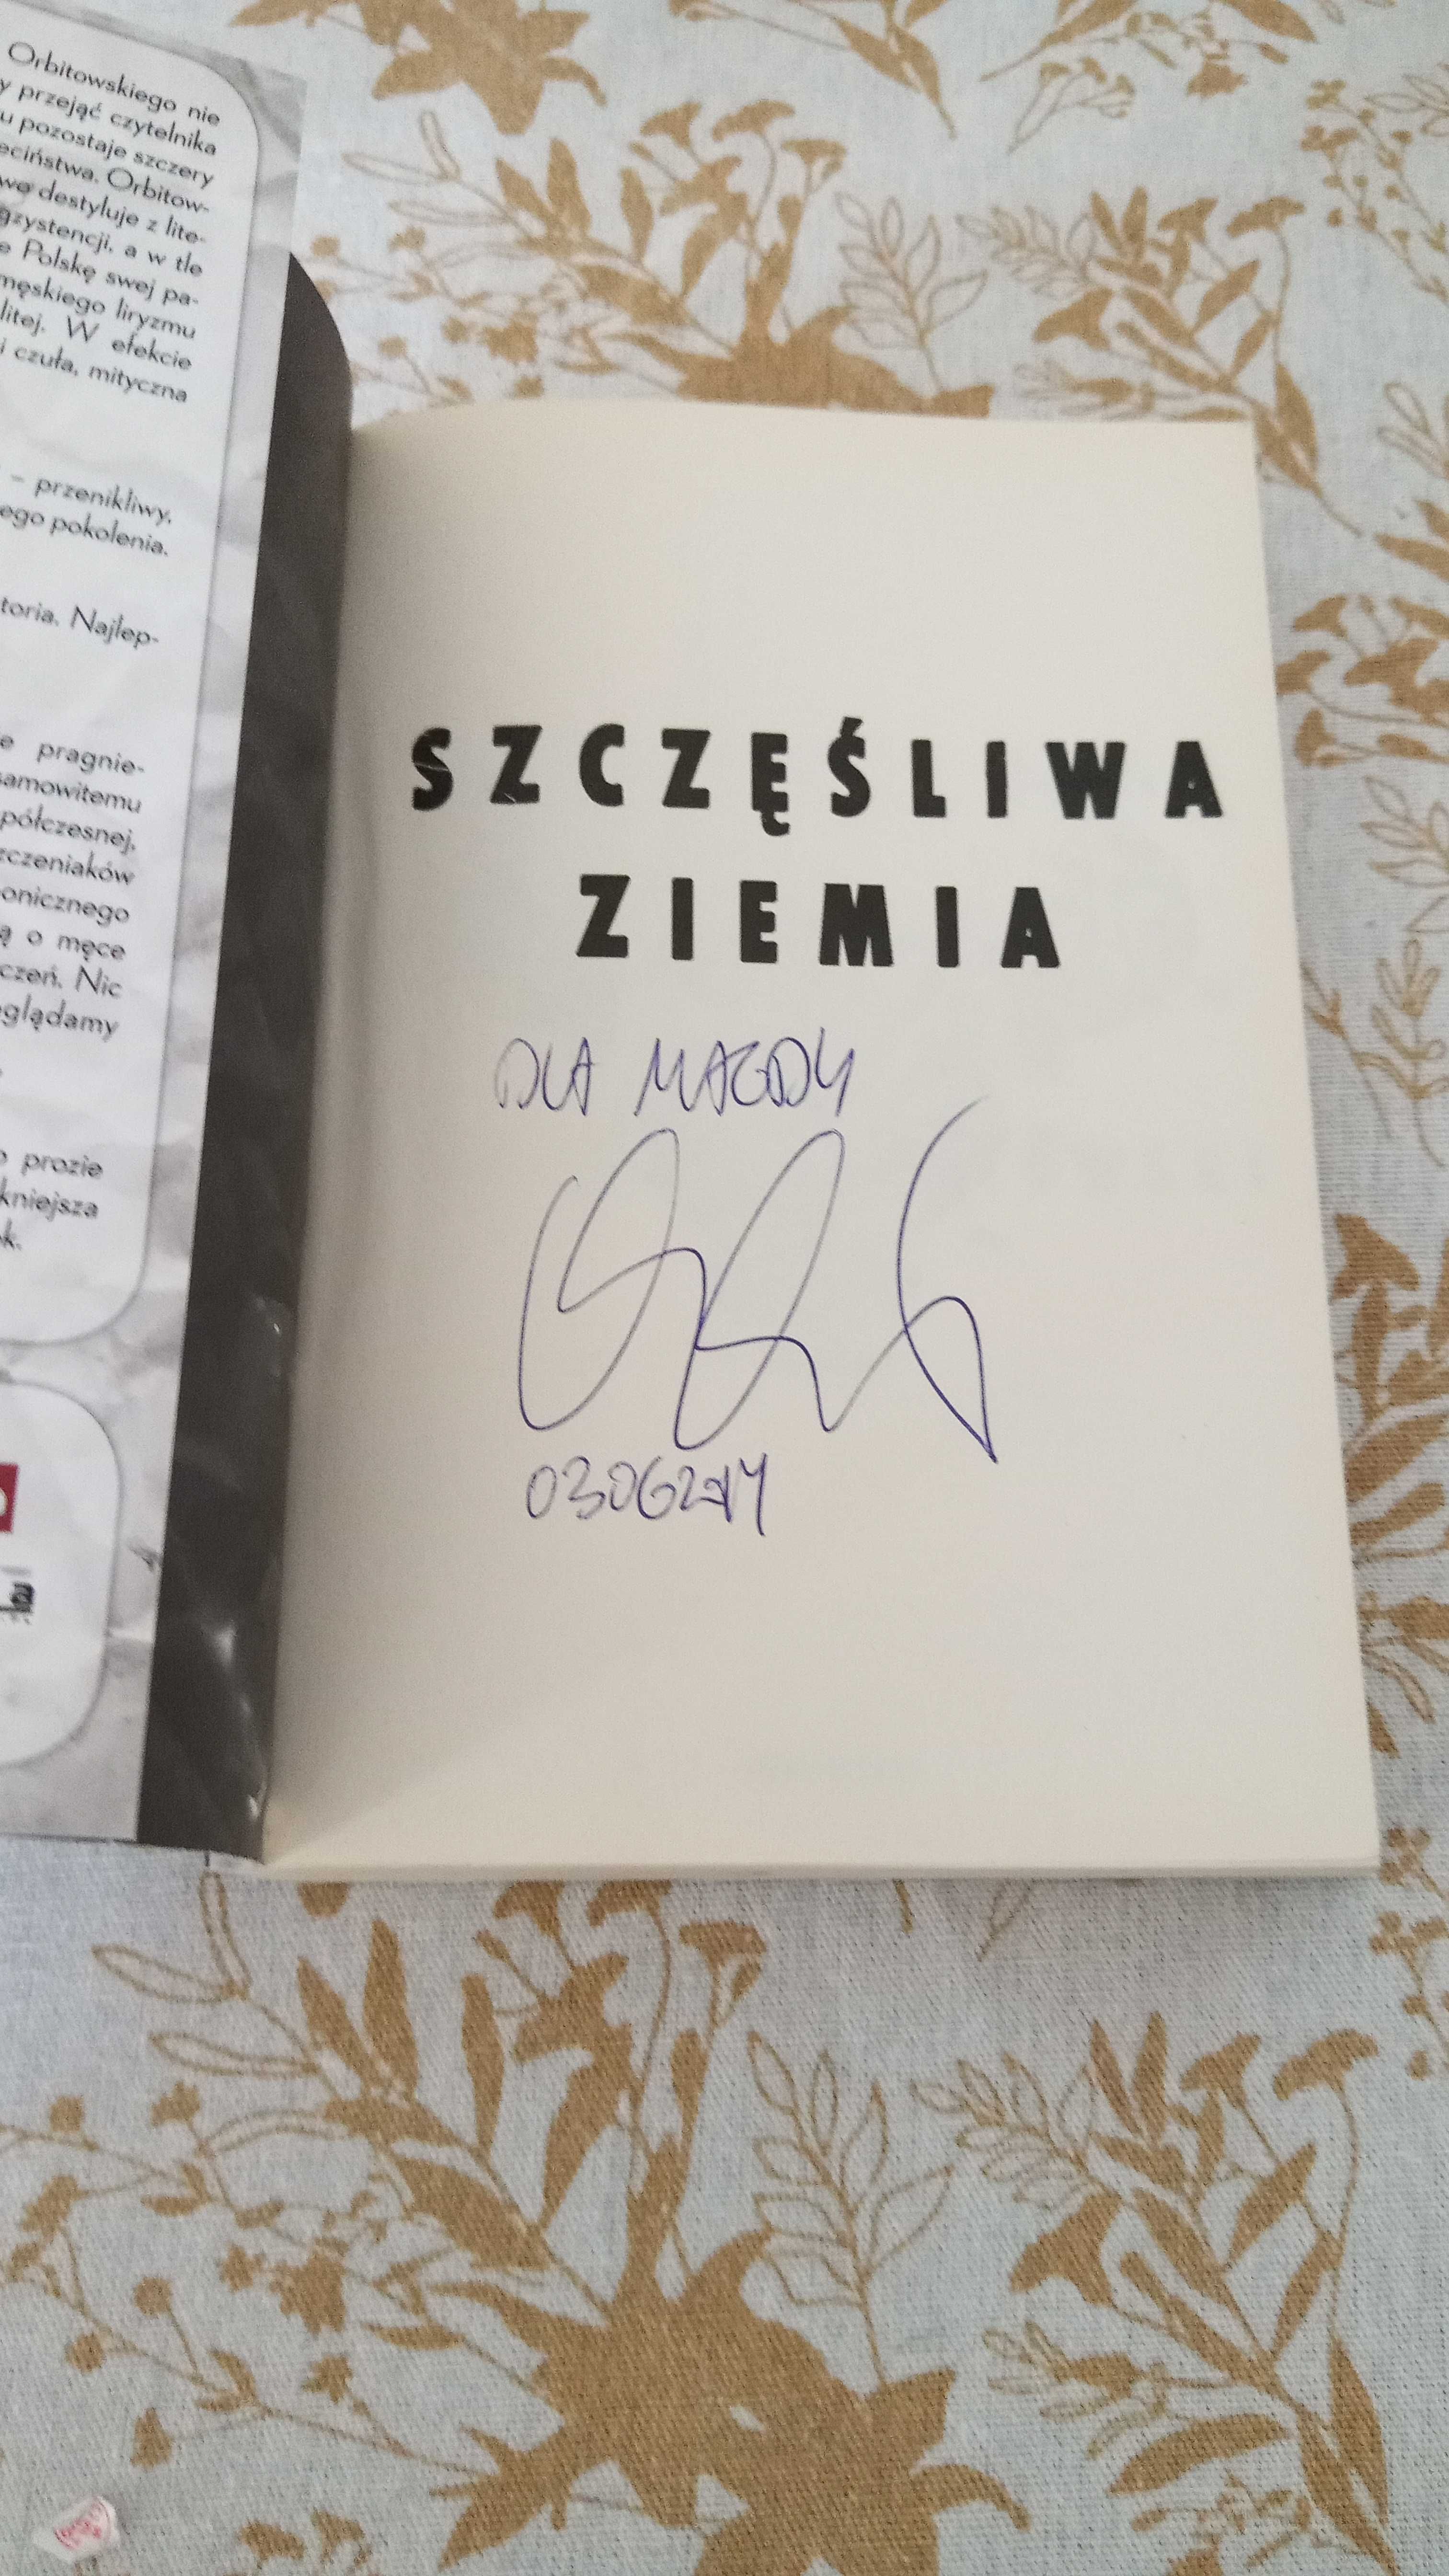 Książka "Szczęśliwa ziemia", Łukasz Orbitowski, autograf